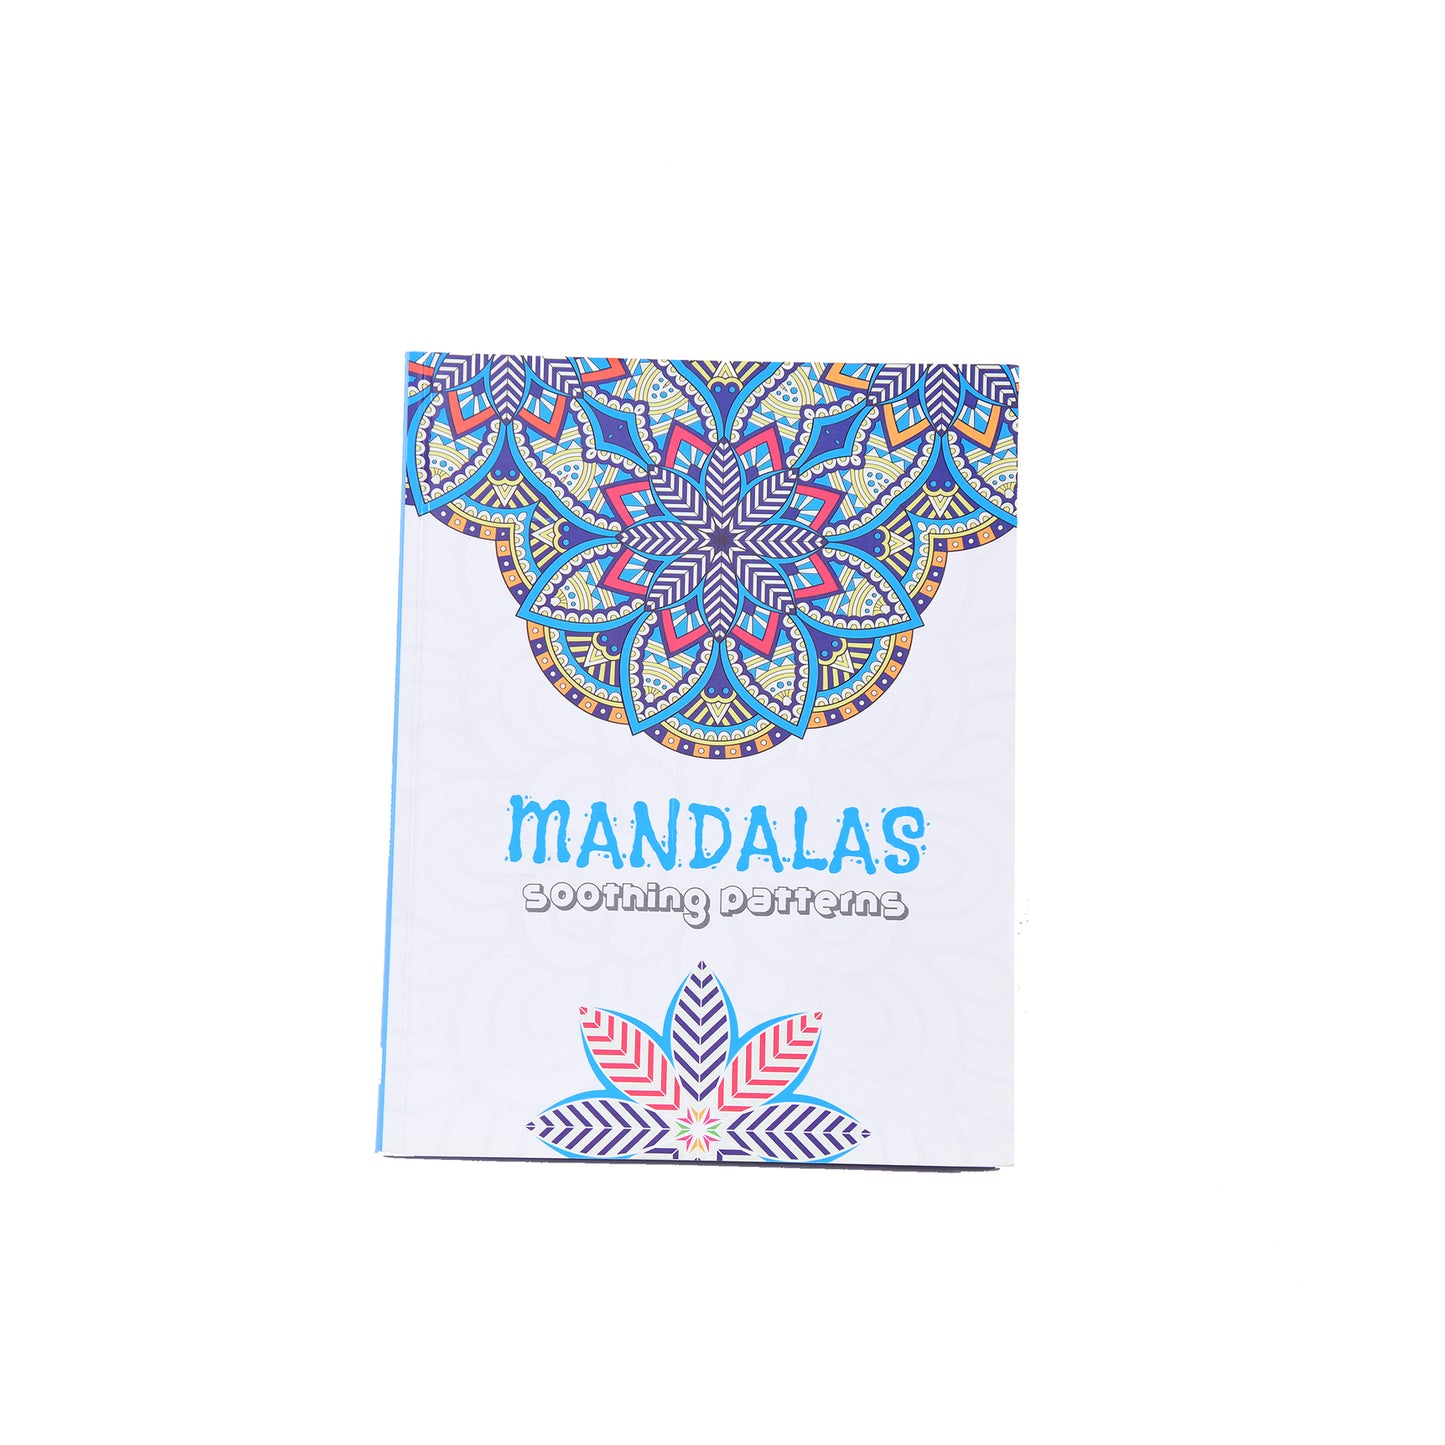 Mandalas Soothing Patterns